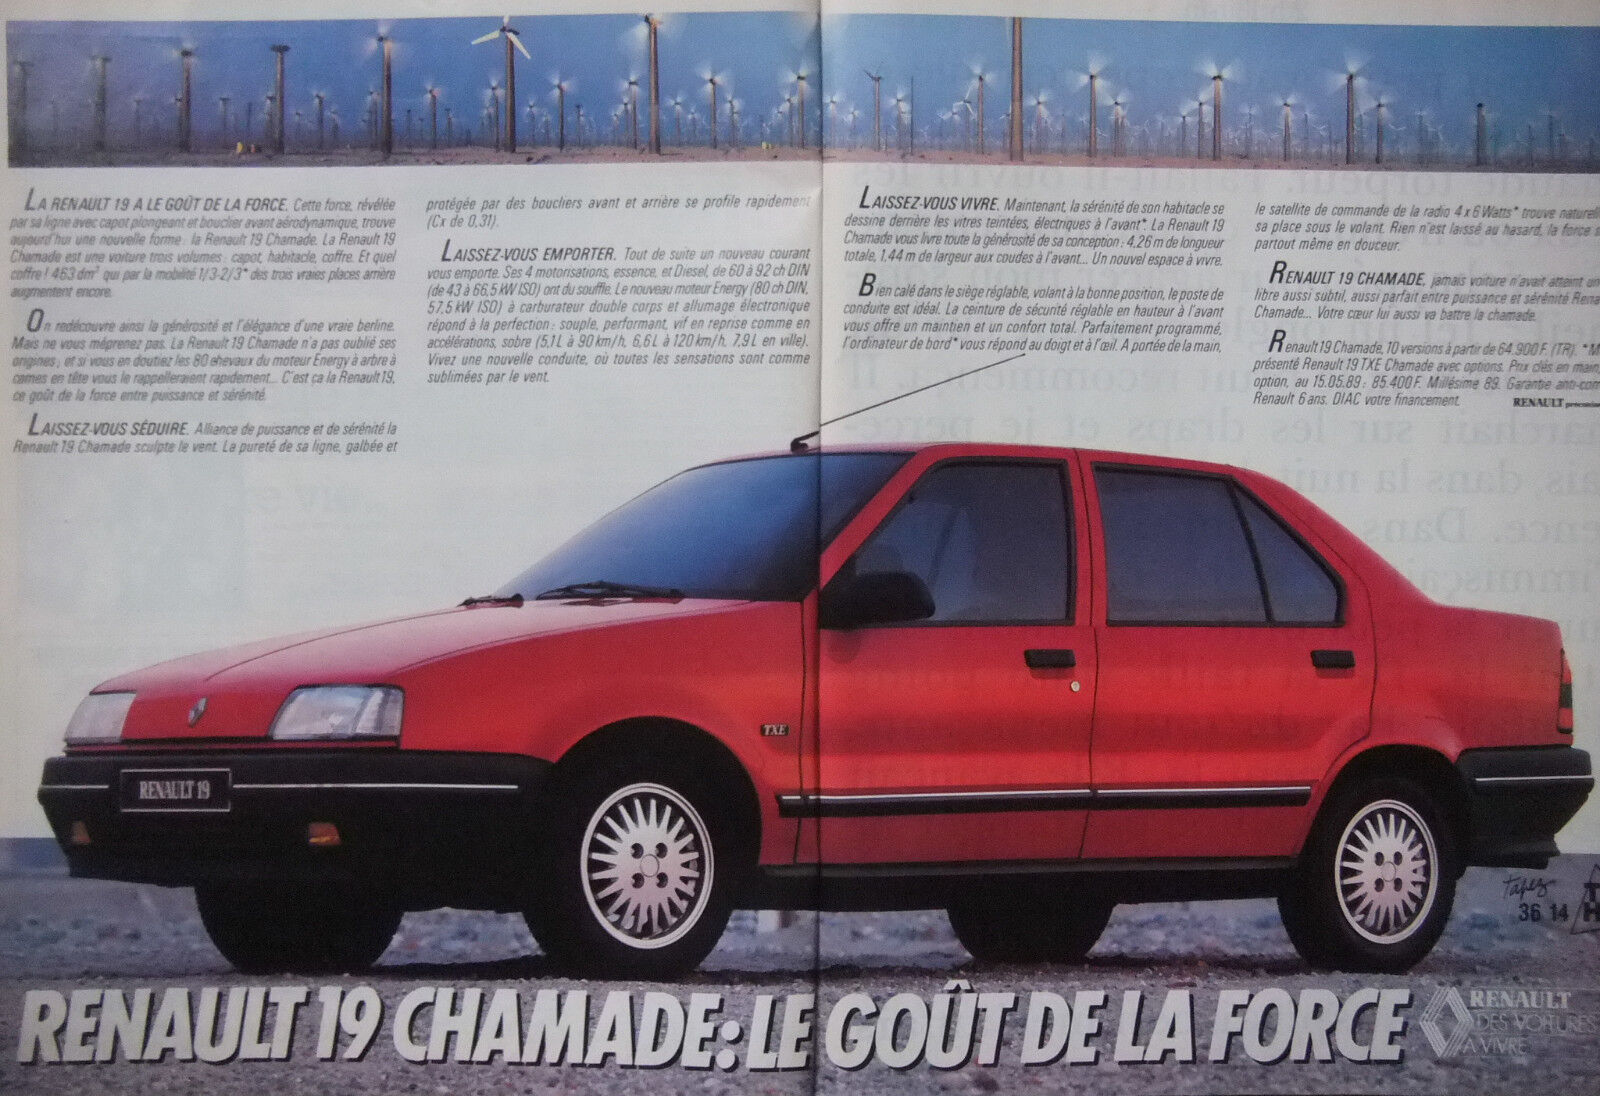 1989 RENAULT 19 CHAMADE LE GOUT DE LA FORCE PRESS ADVERTISEMENT -- ADVERTISING